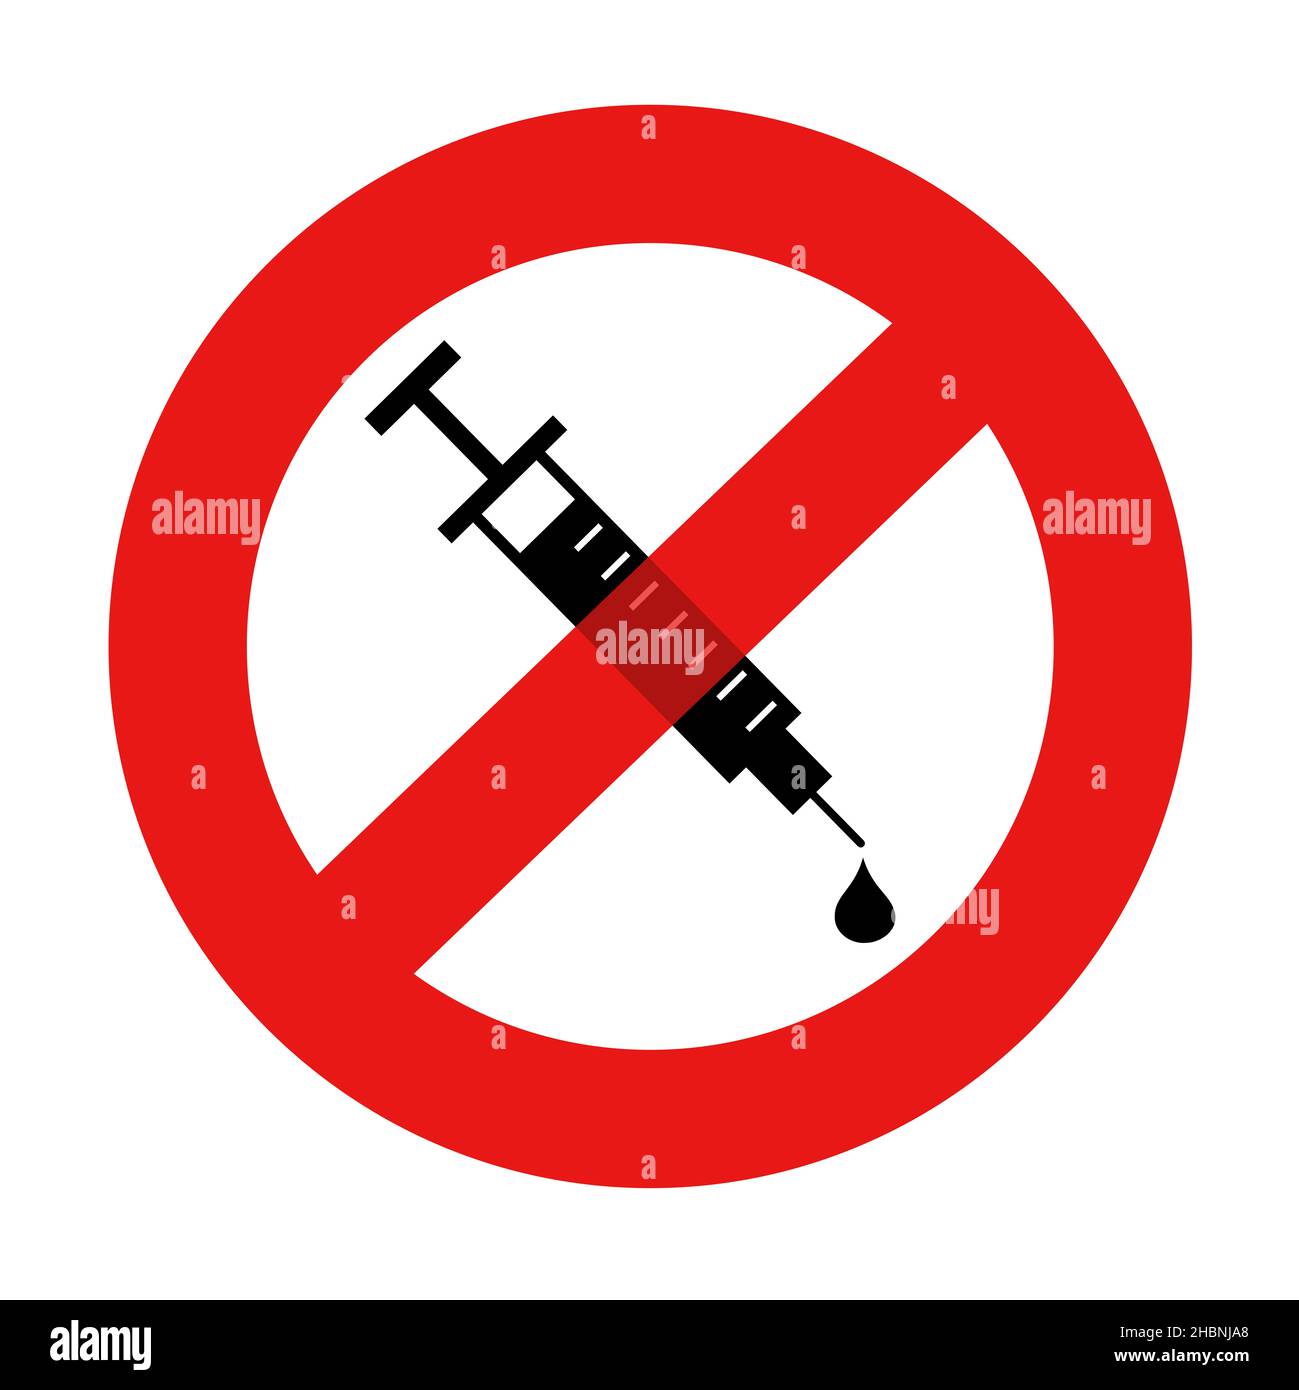 Anti-vax - Jeringa con vacuna para la vacunación está tachada. Rechazo y rechazo negativo anti-vaxxer. Ilustración vectorial aislada sobre blanco. Foto de stock